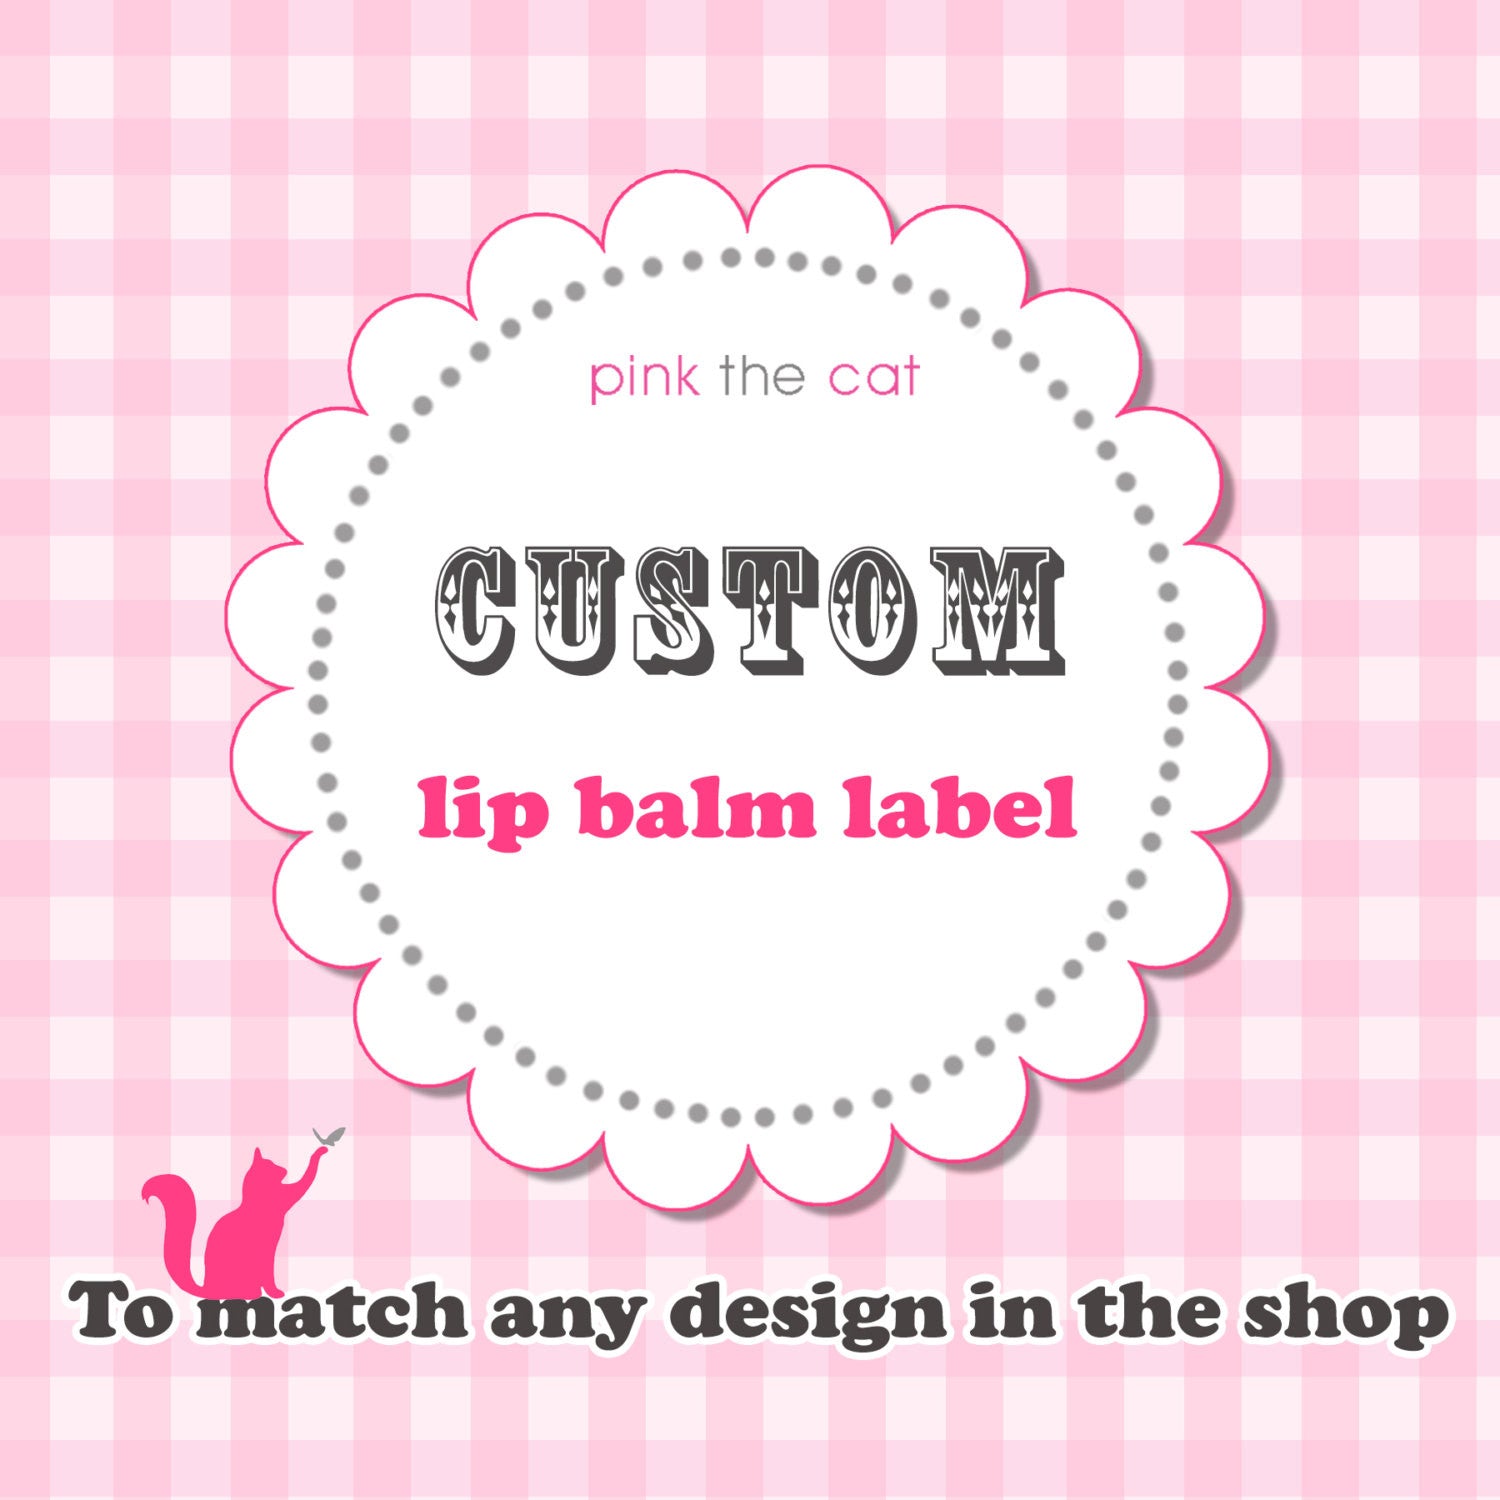 lip balm labels